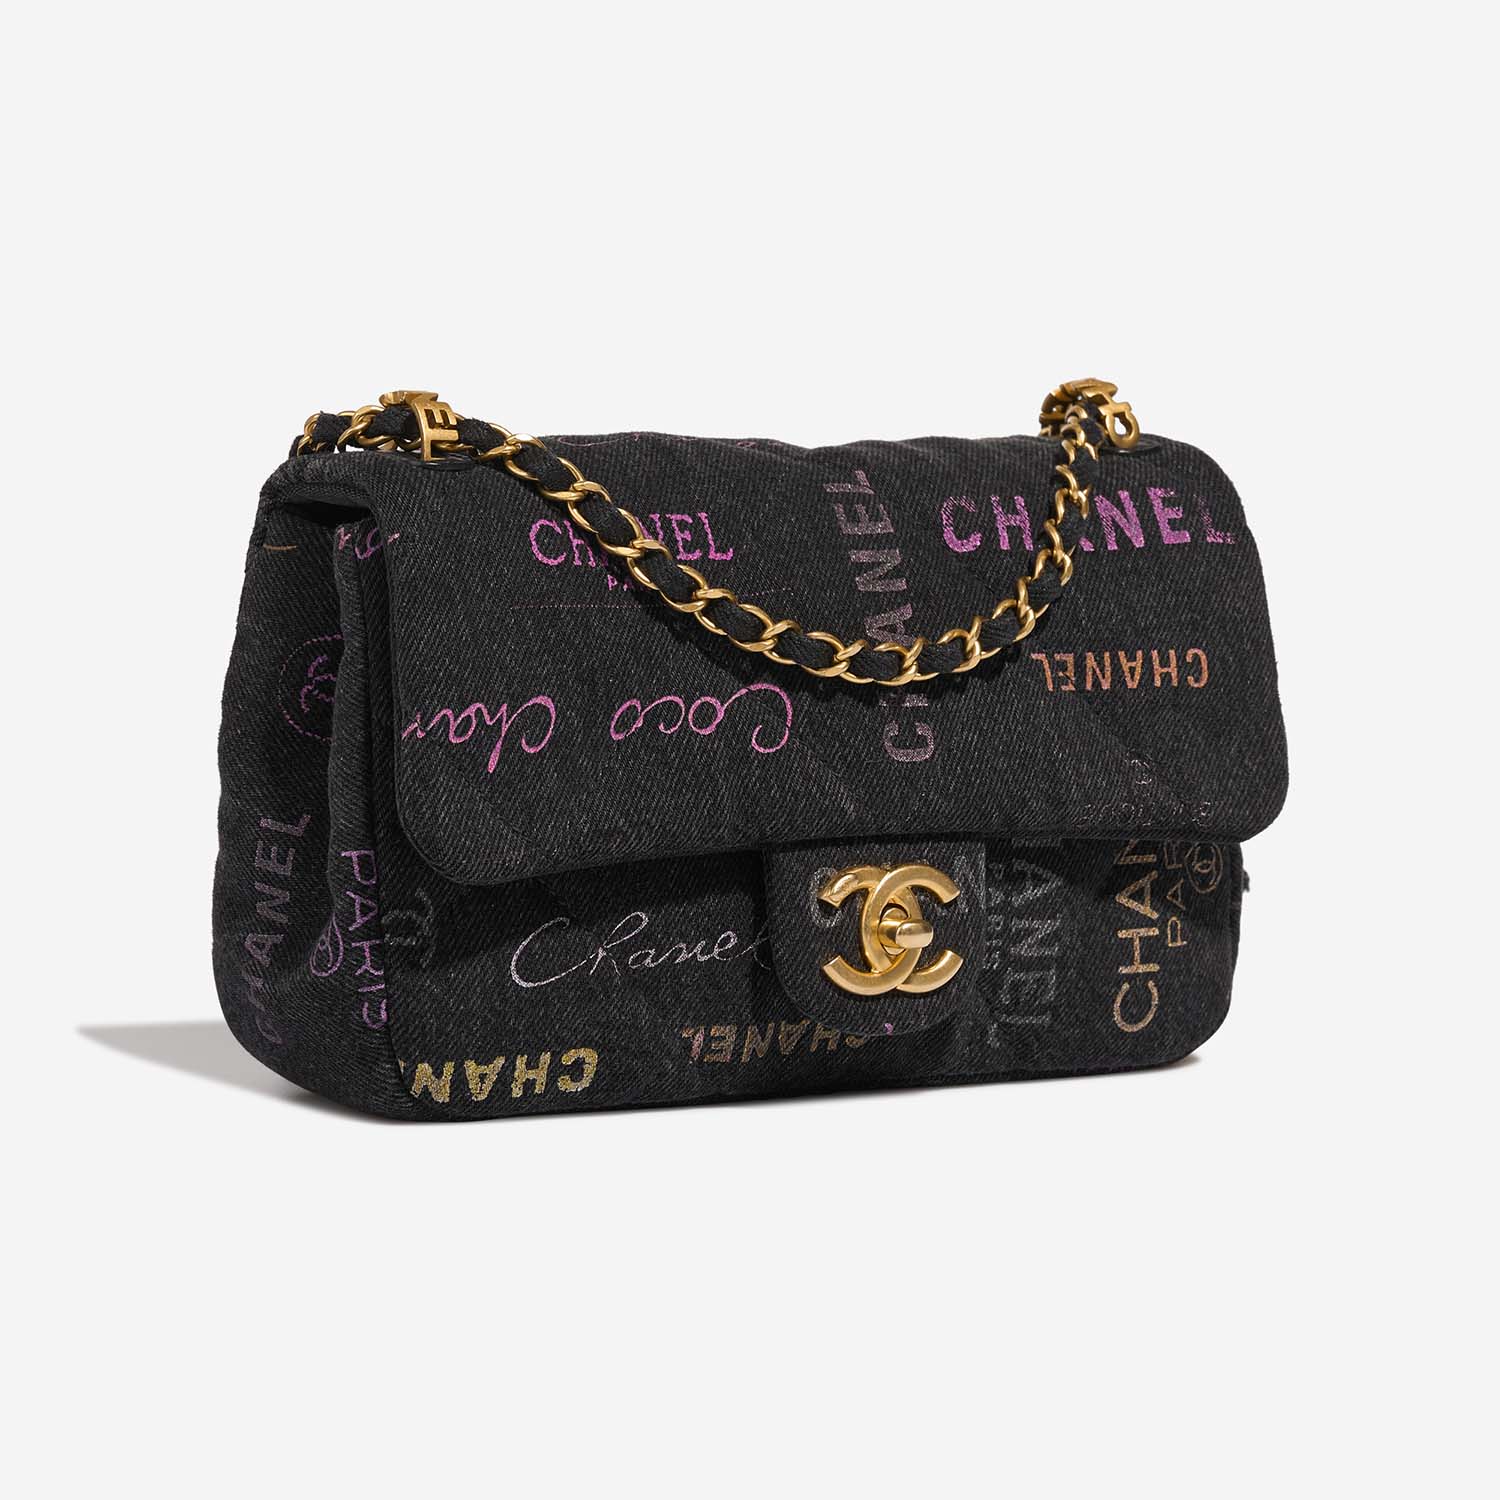 Chanel Timeless Small Multicolor Side Front | Verkaufen Sie Ihre Designer-Tasche auf Saclab.com